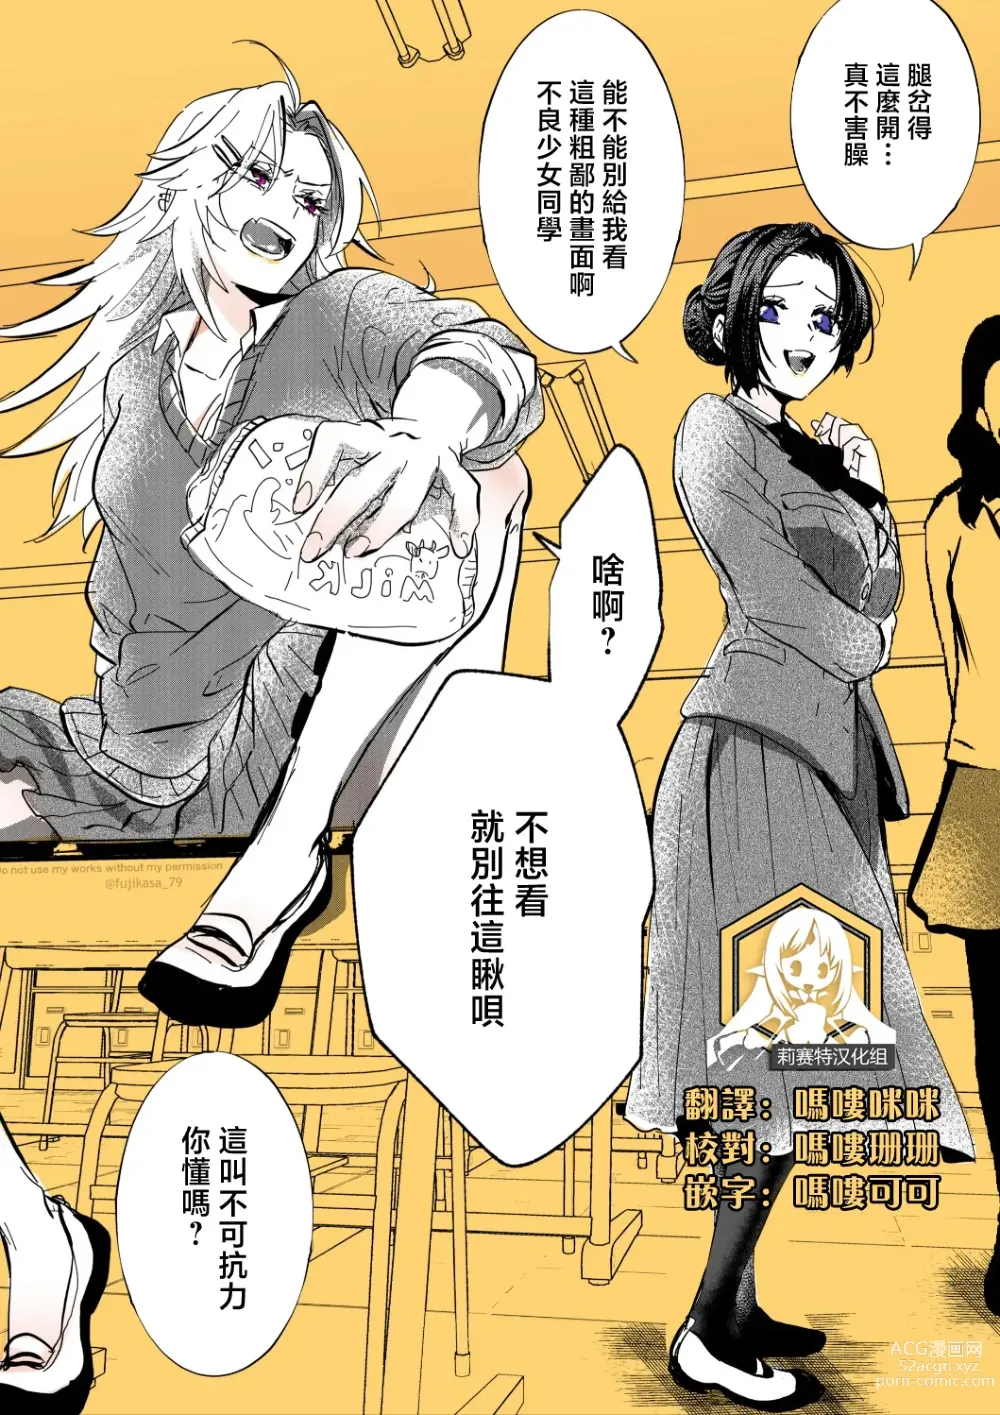 Page 1 of manga 不良少女与委员长关系不好全是演戏